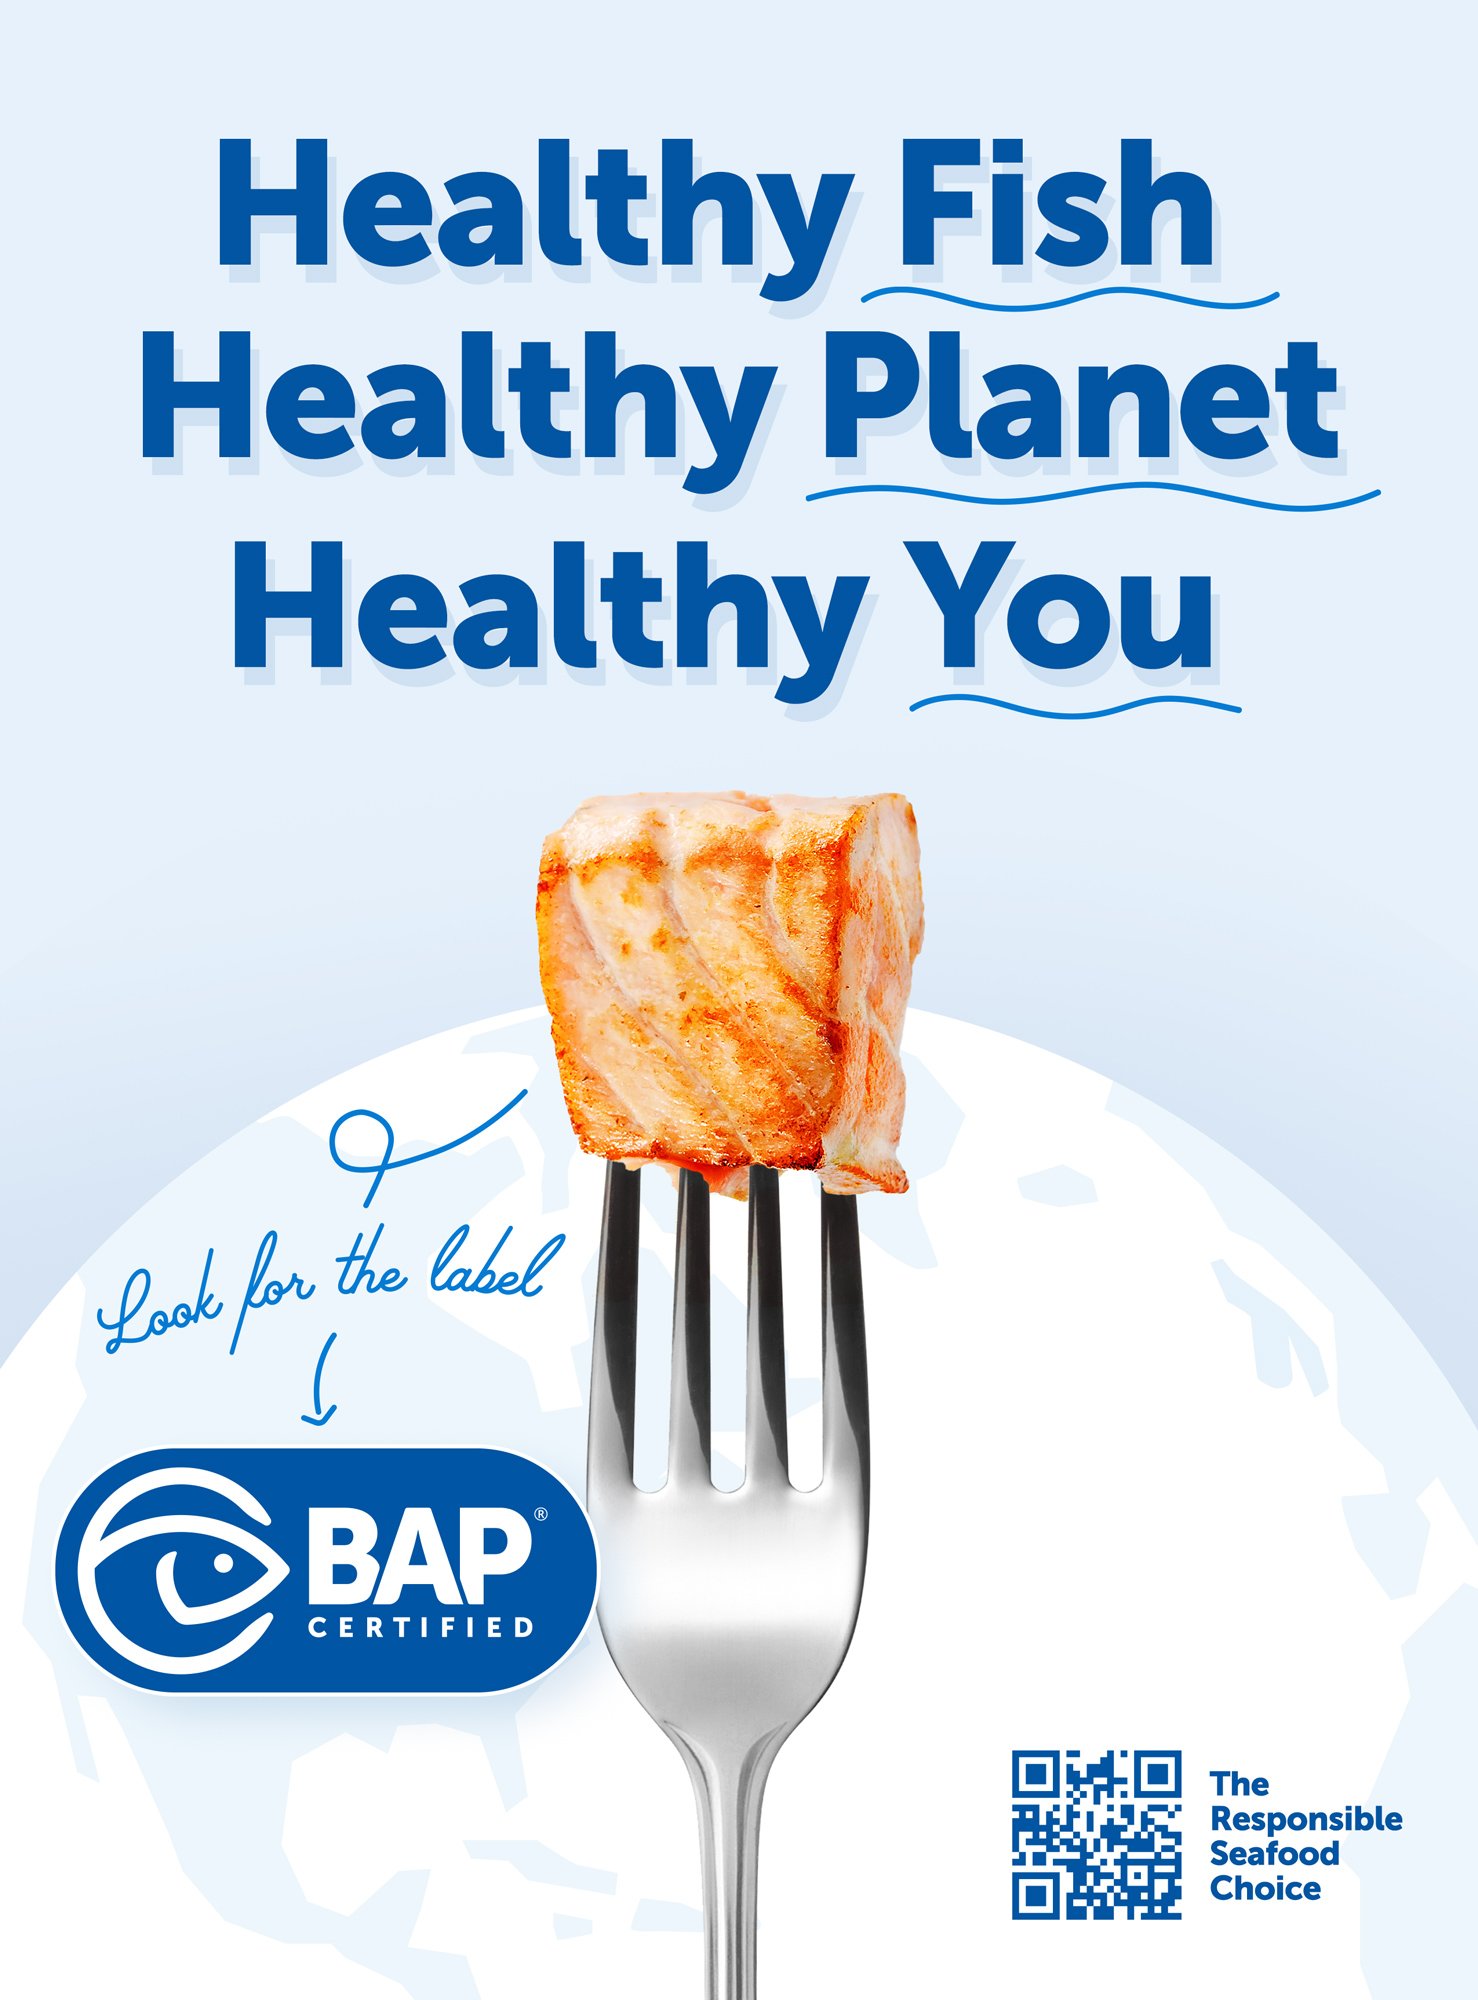 BAP Healthy Campaign